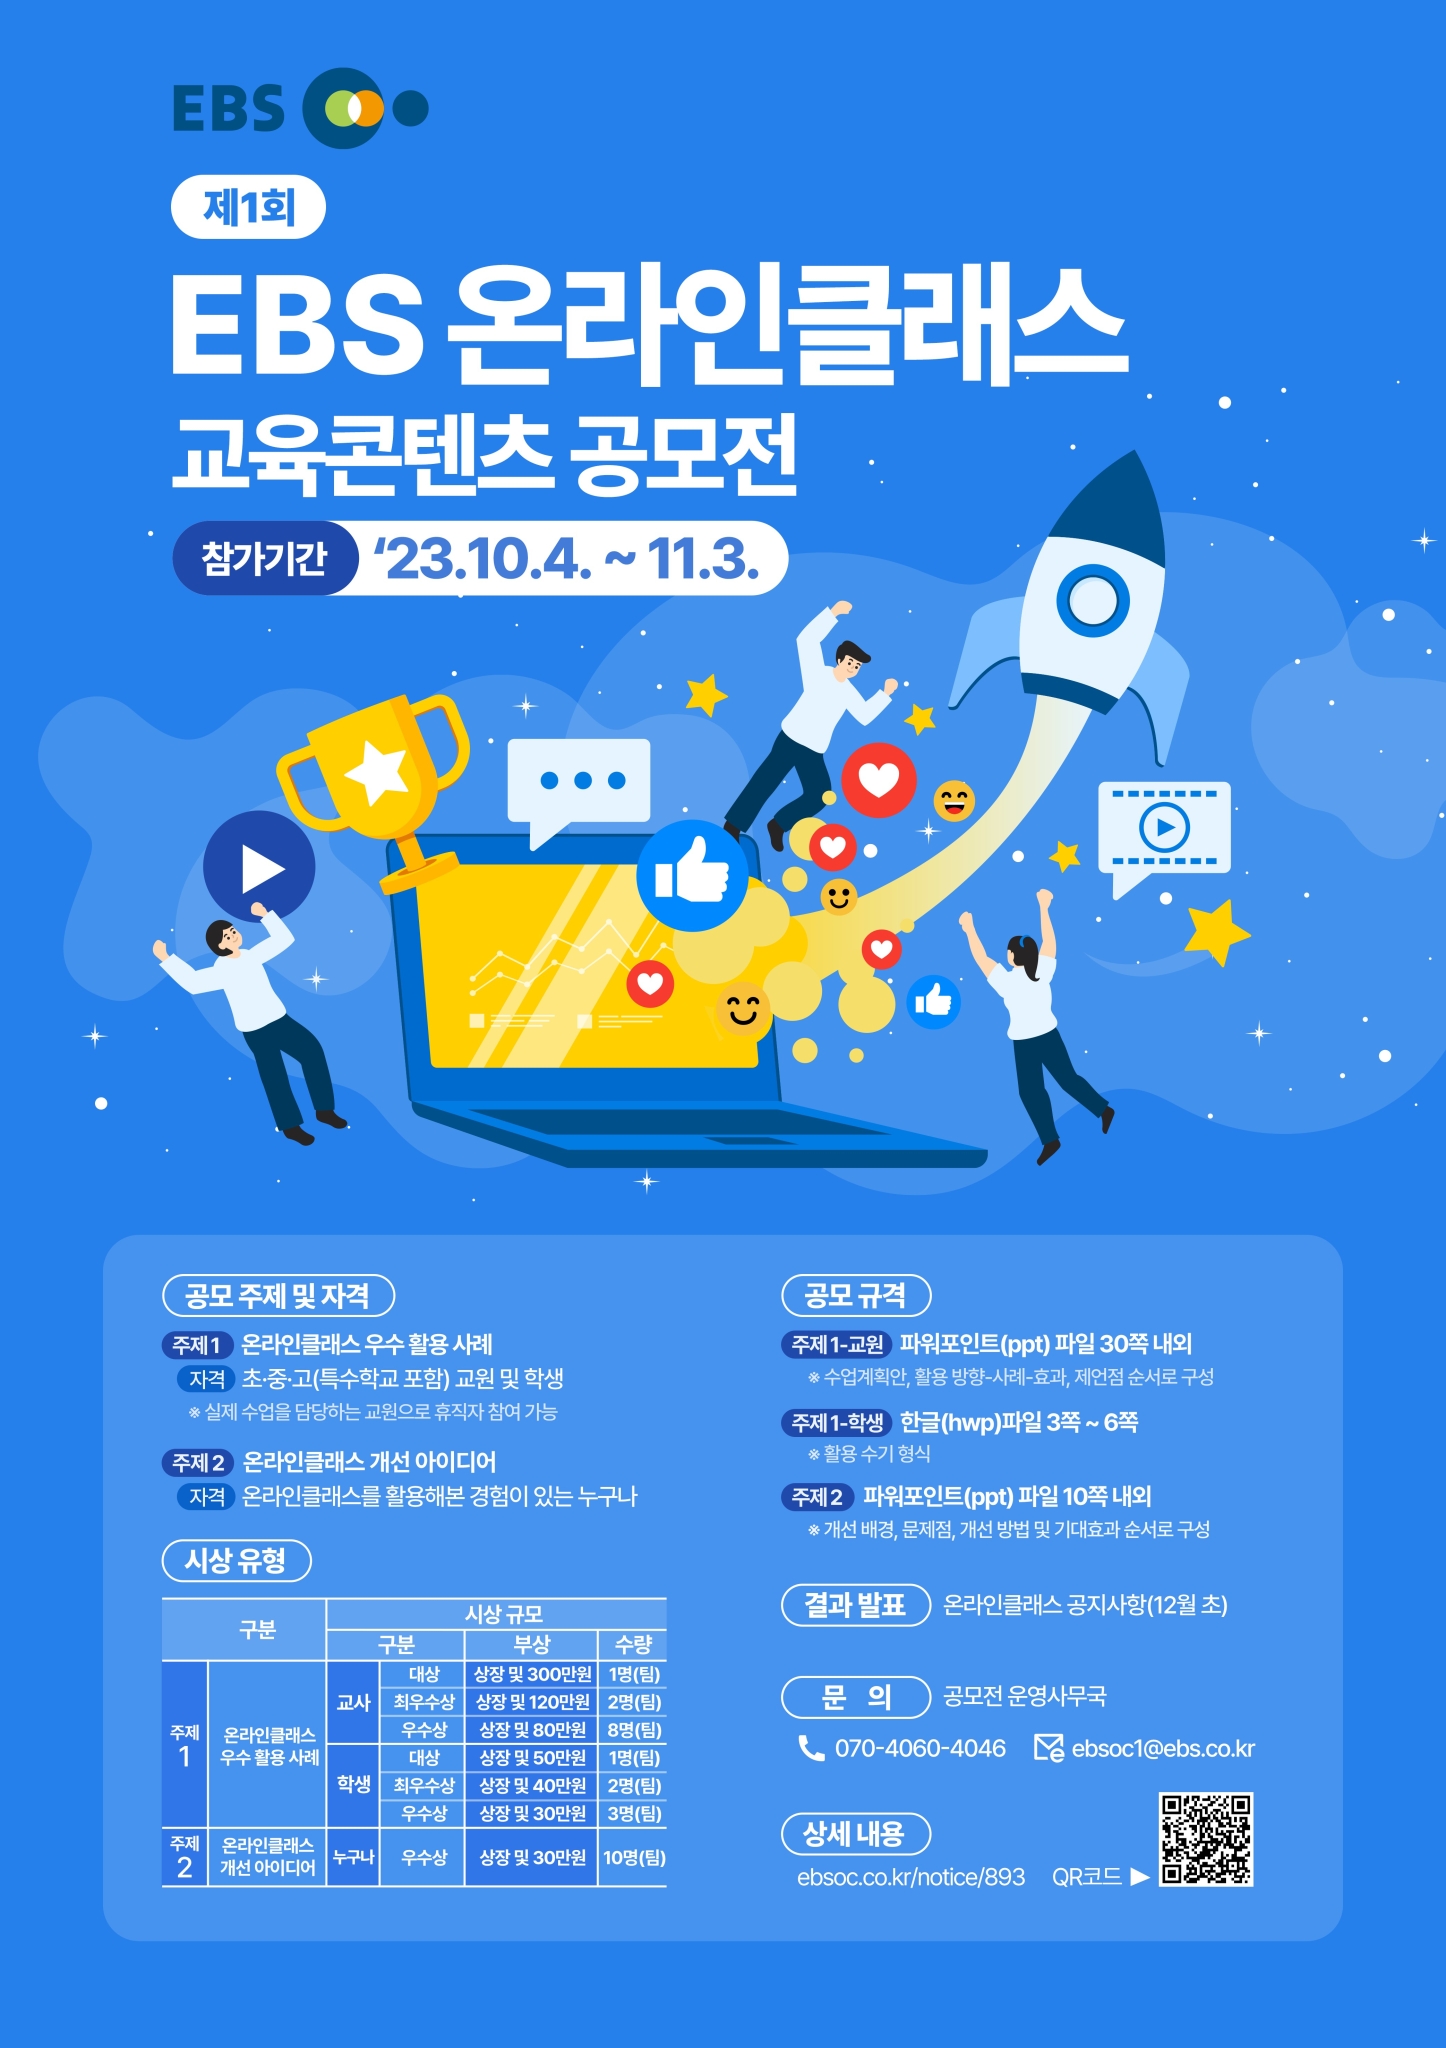 한국교육방송공사 디지털교육서비스부_공모전 공식 홍보 포스터